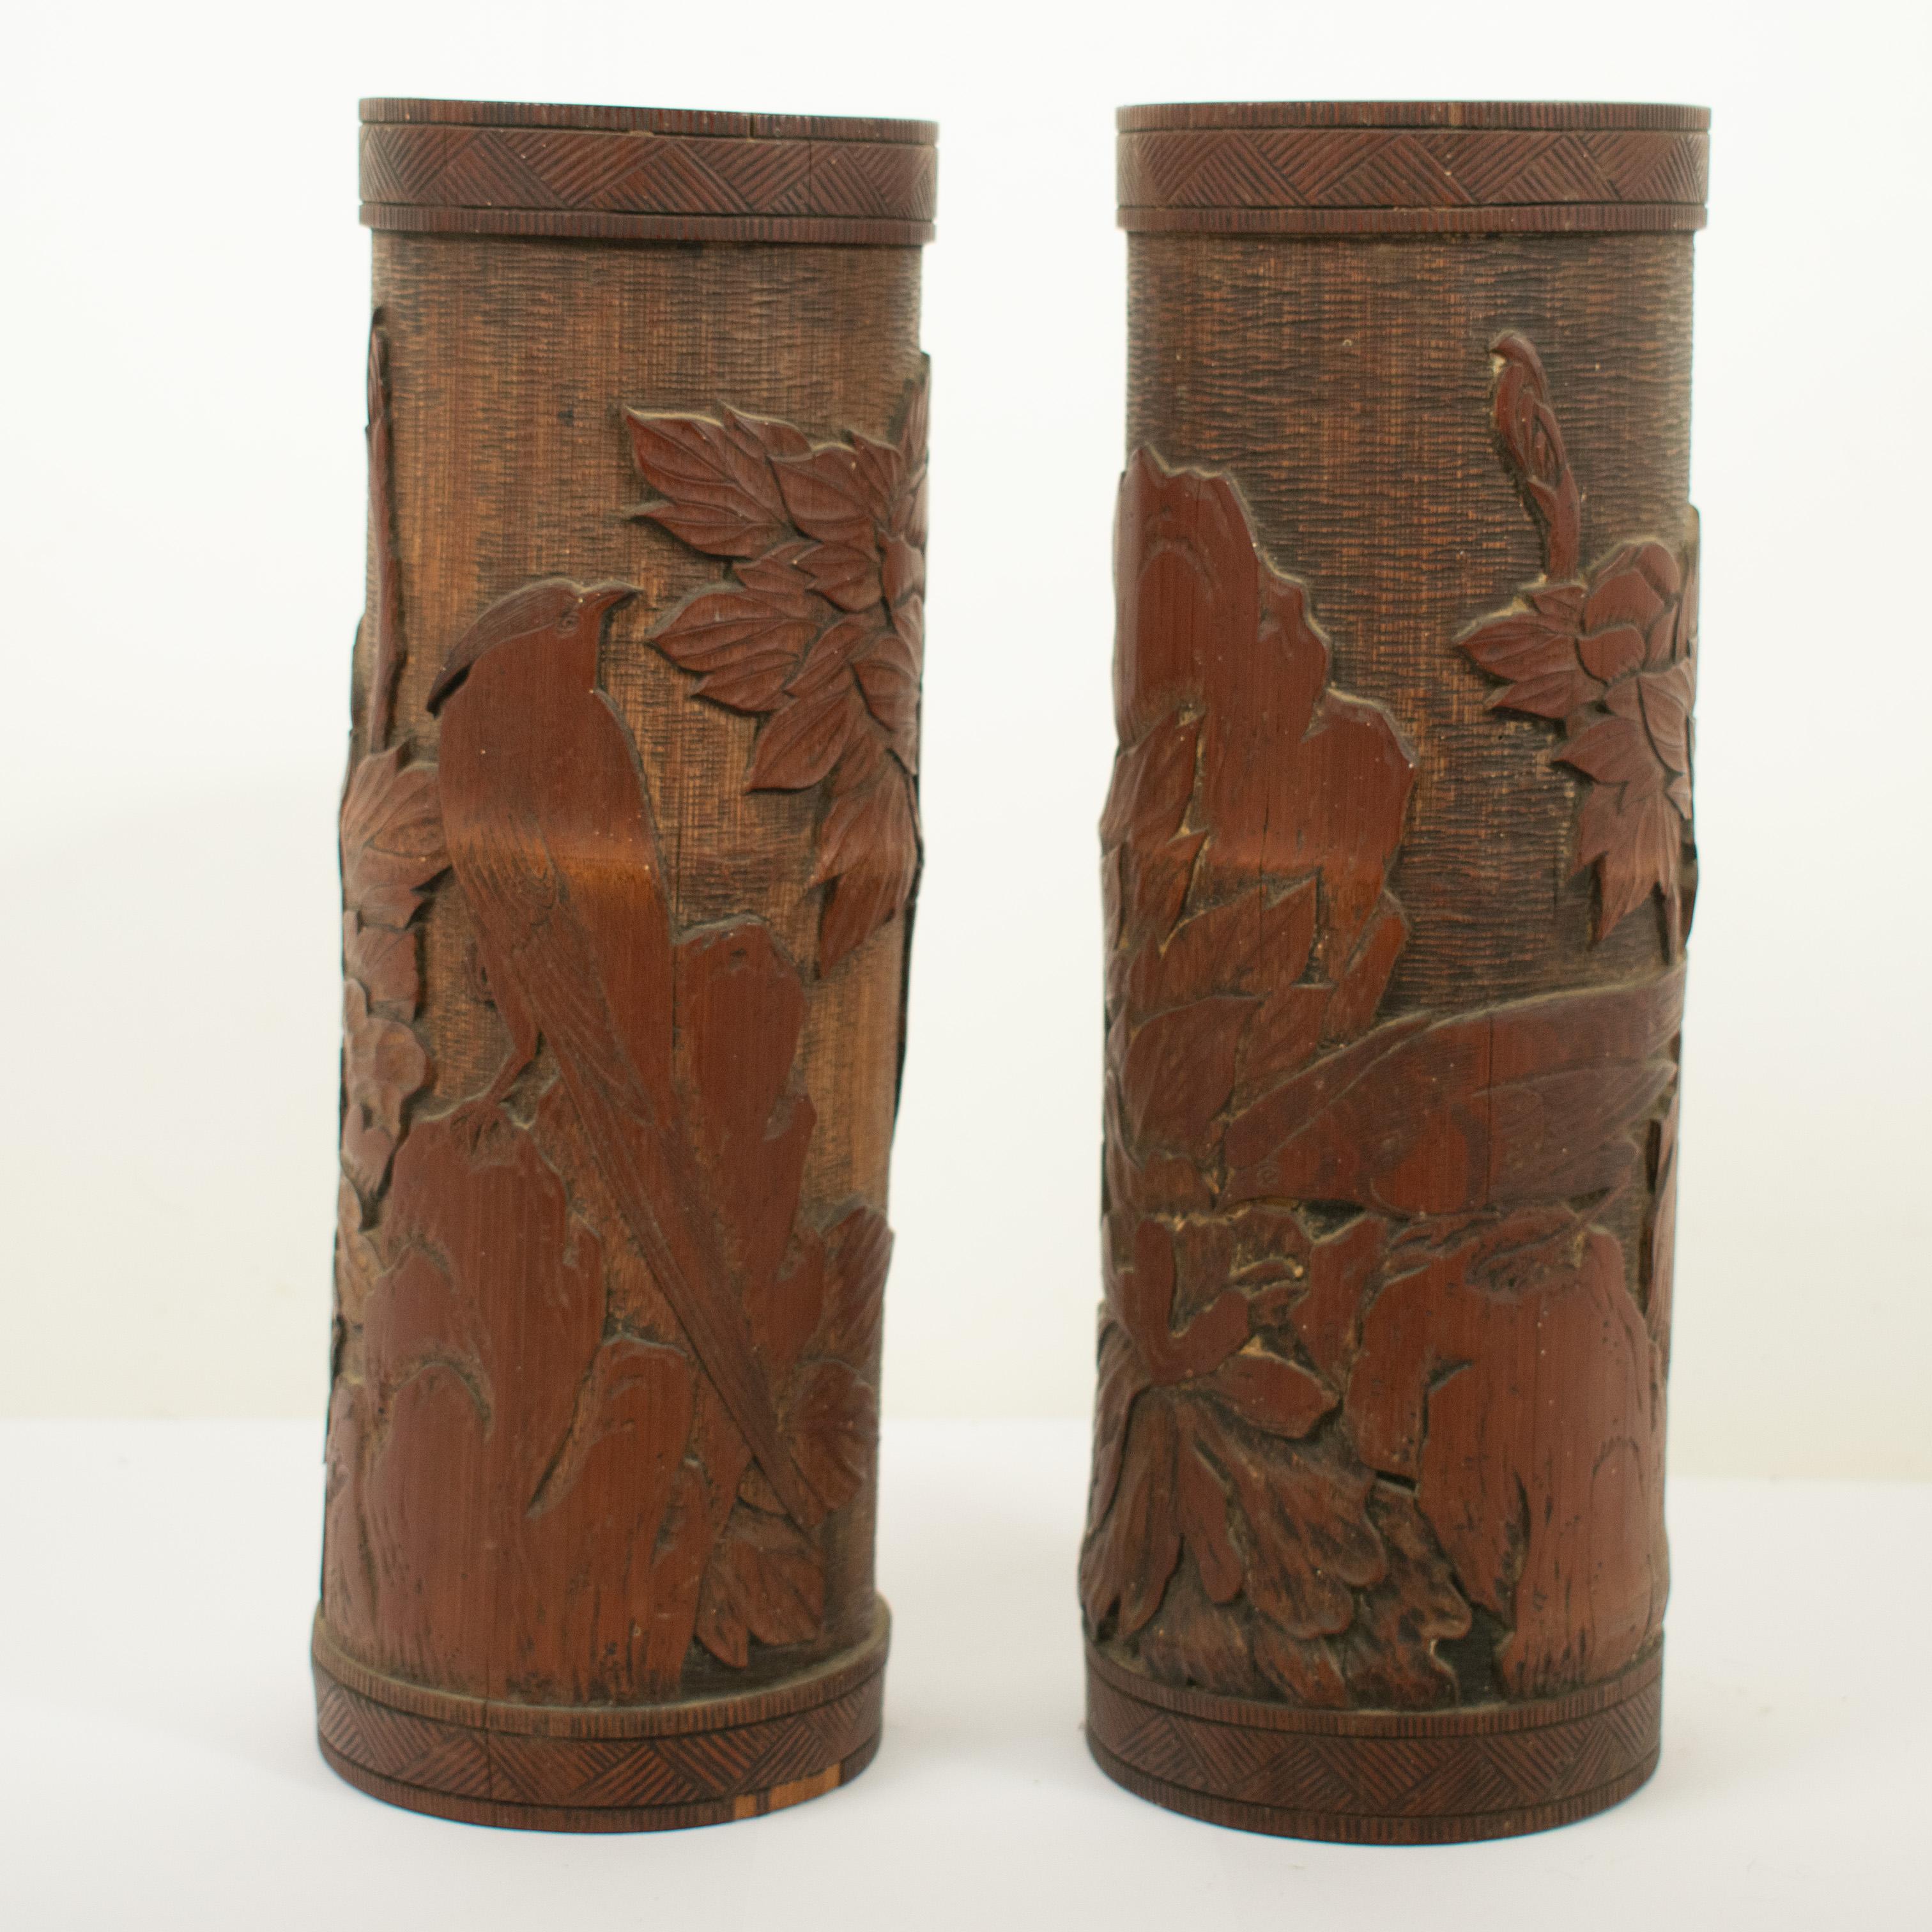 Ein Paar chinesische Bambus-Bürstenköpfe im Vintage-Stil. Gekonnt geschnitzt mit Bildern von Paradiesvögeln, Laub und Blumen.

Die Töpfe sind so, wie sie gefunden wurden, und wurden in keiner Weise restauriert. Das Bambusholz hat einige kleine